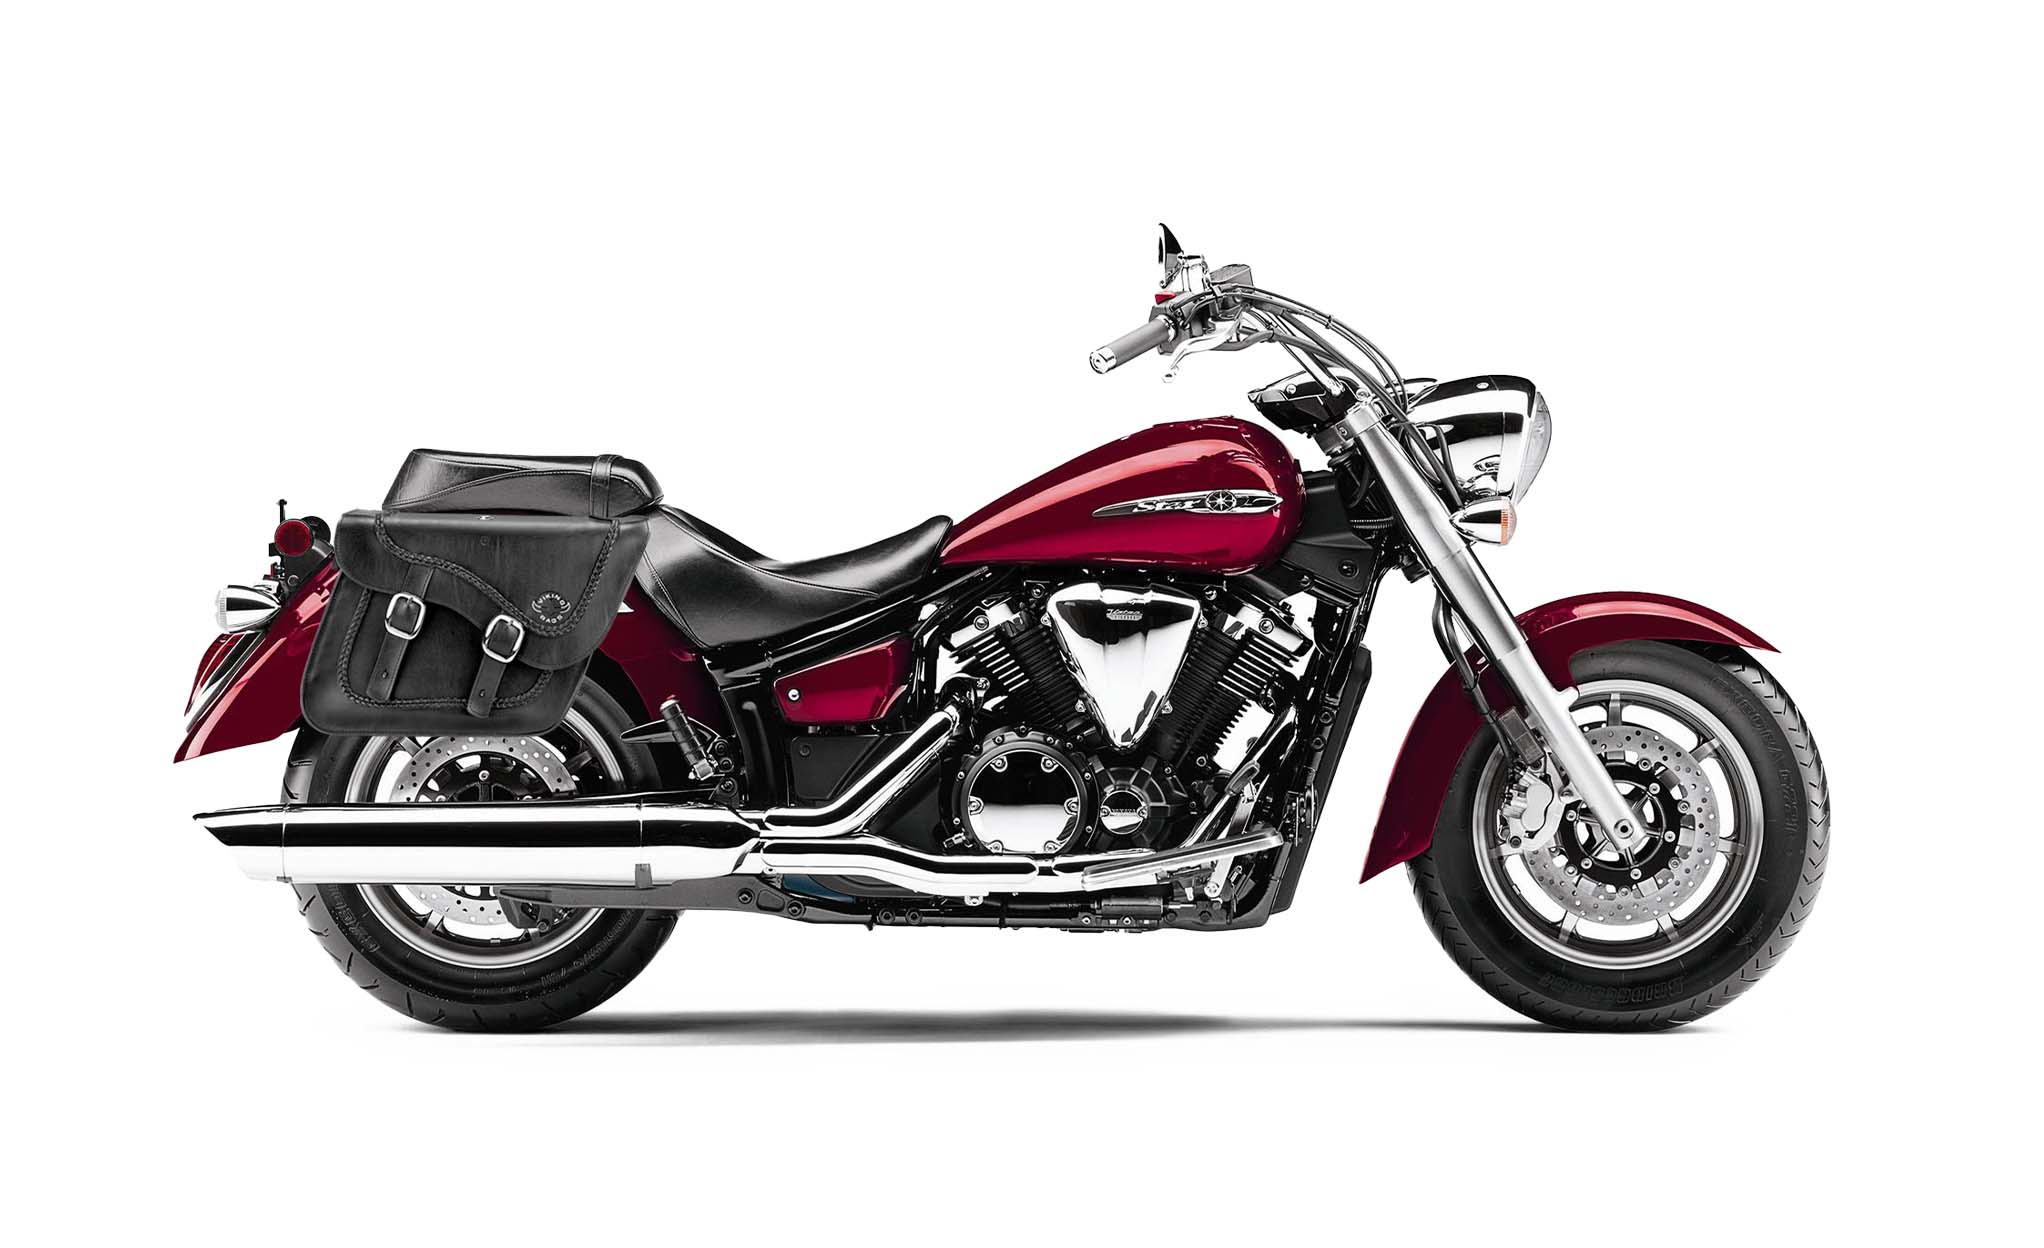 Viking Americano Yamaha V Star 1300 Classic Xvs1300A Braided Large Leather Motorcycle Saddlebags on Bike Photo @expand